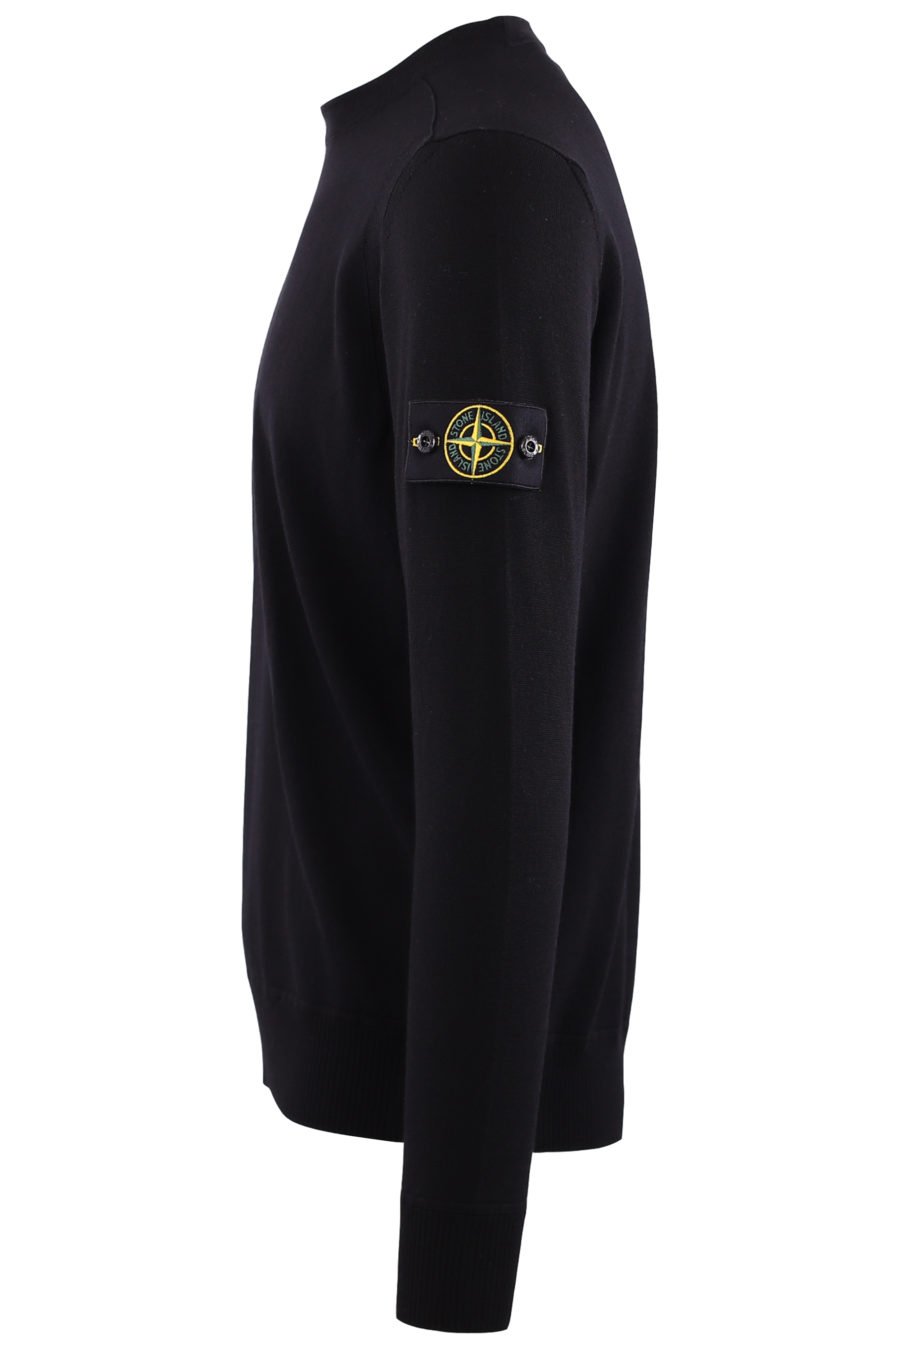 Jersey negro de lana con logo parche - IMG 7154